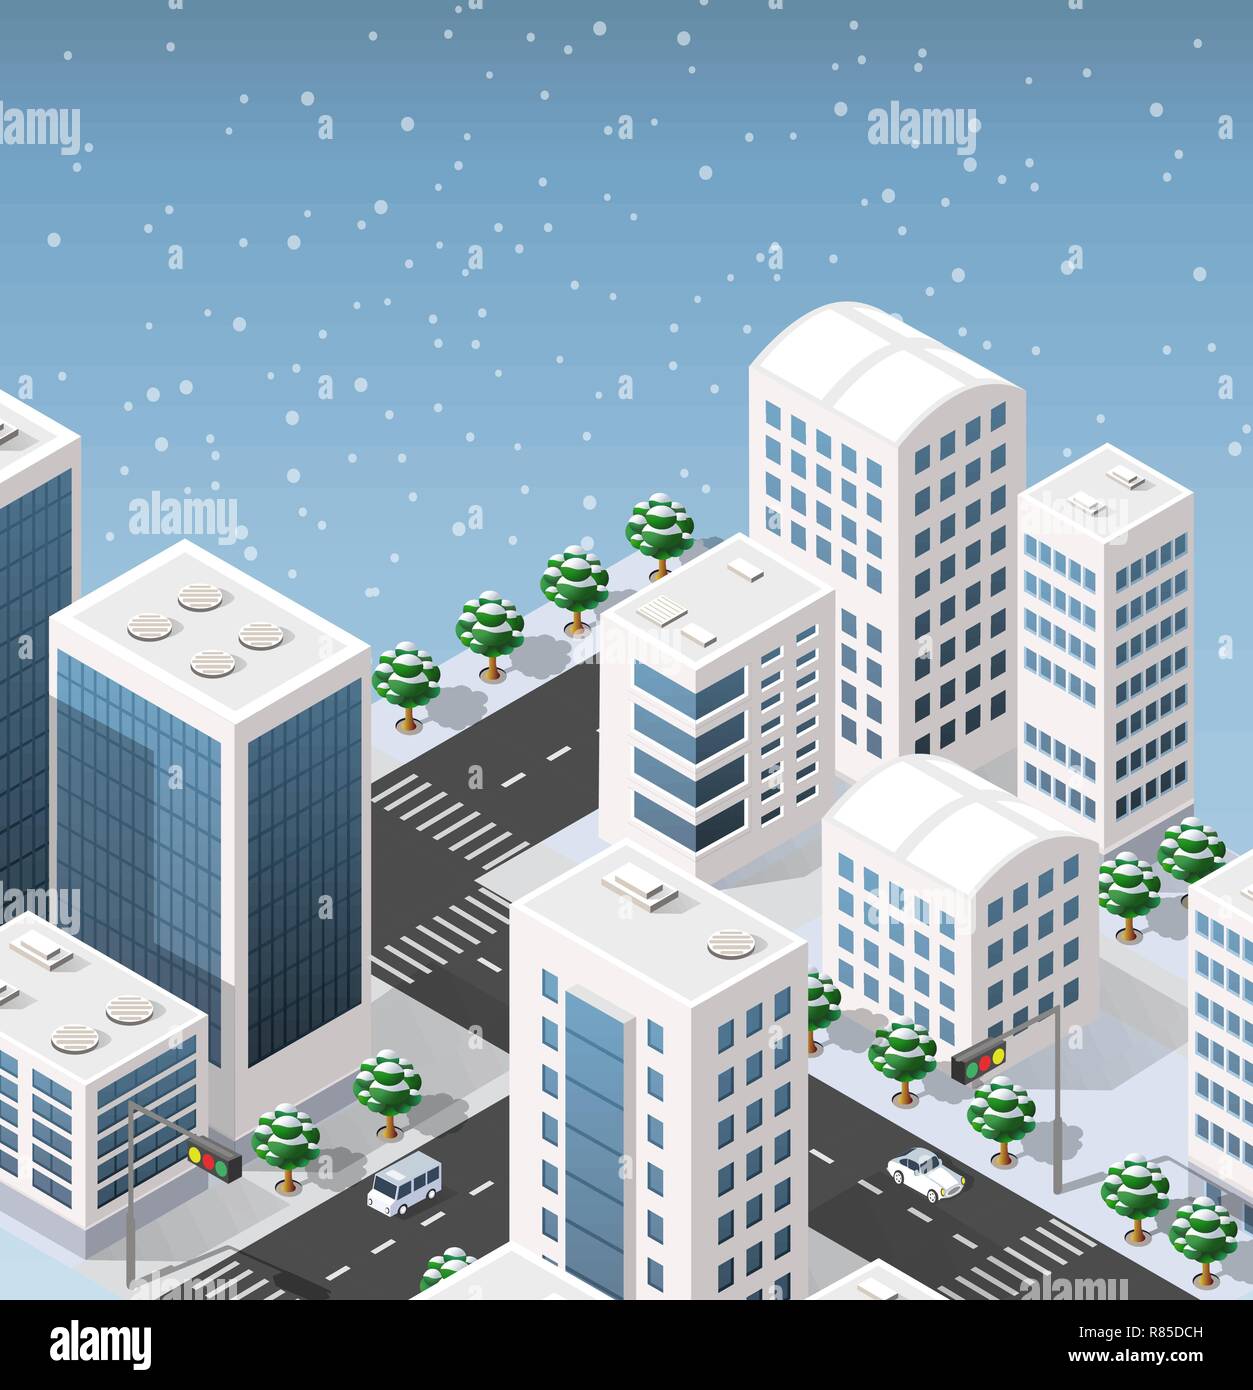 Illustrazione isometrica della moderna città 3d. Paesaggio Di Inverno alberi innevati, strade. Viste tridimensionali di grattacieli, case, edifici e urb Illustrazione Vettoriale